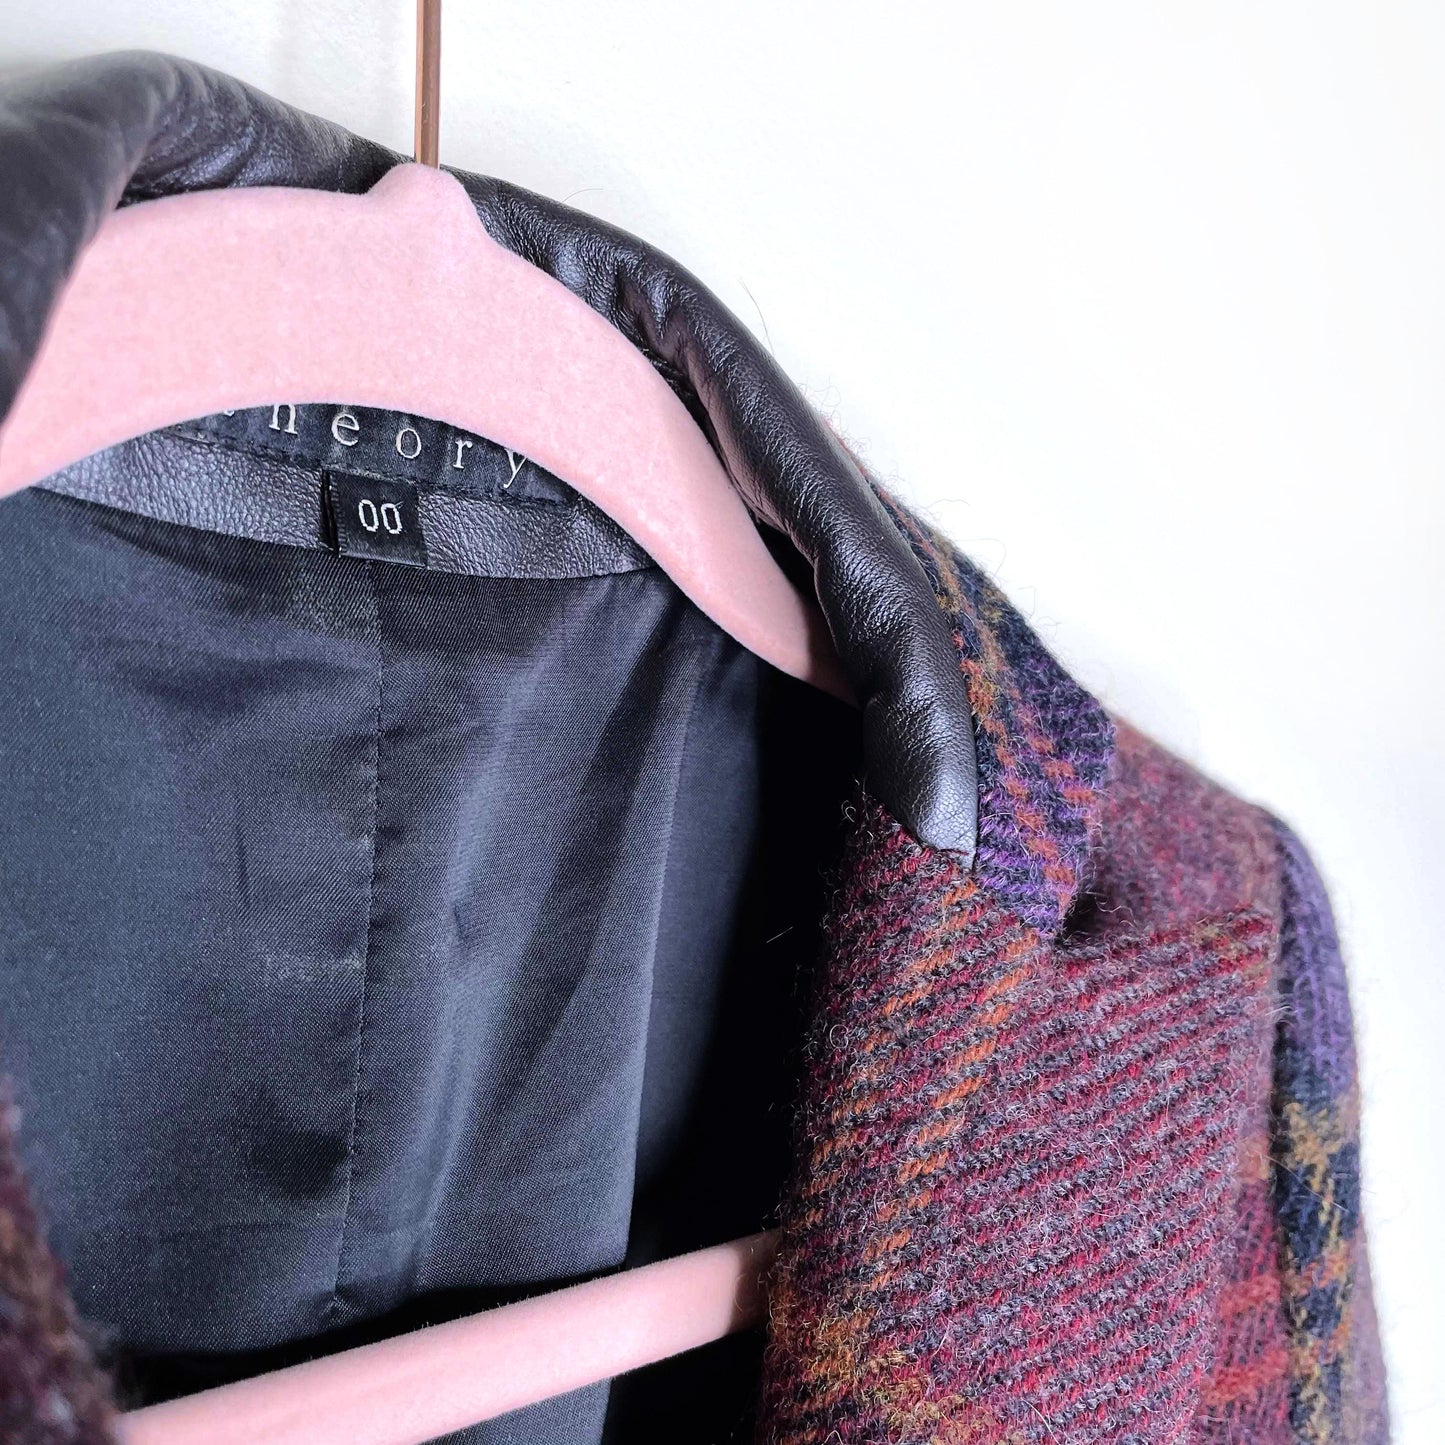 theory sharma wool-alpaca plaid blazer with leather trim - size 00